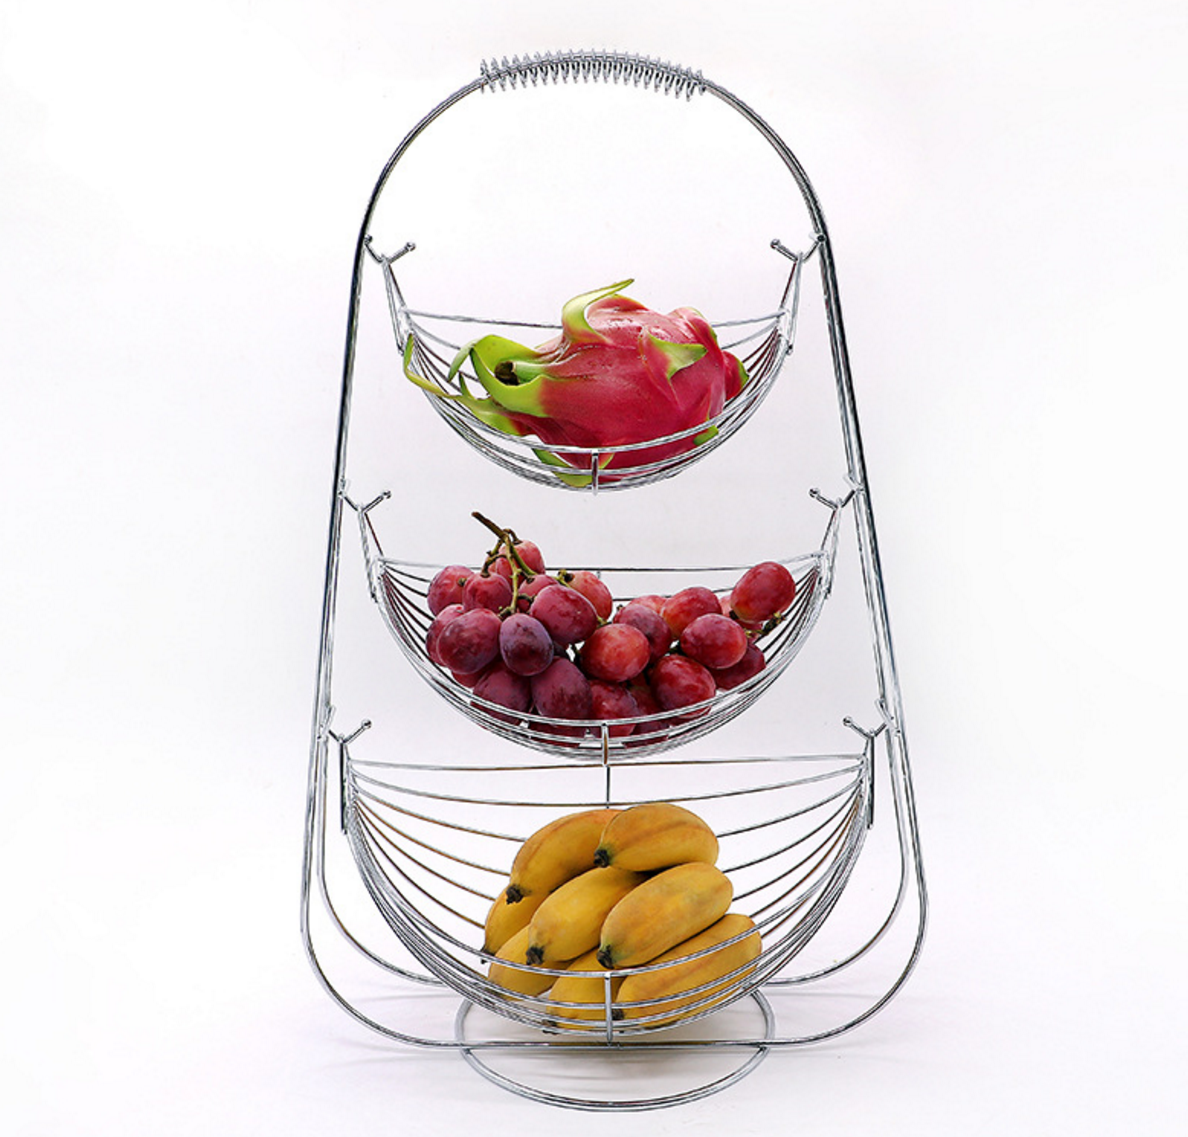 3 Tier metal Hanging Fruit Basket